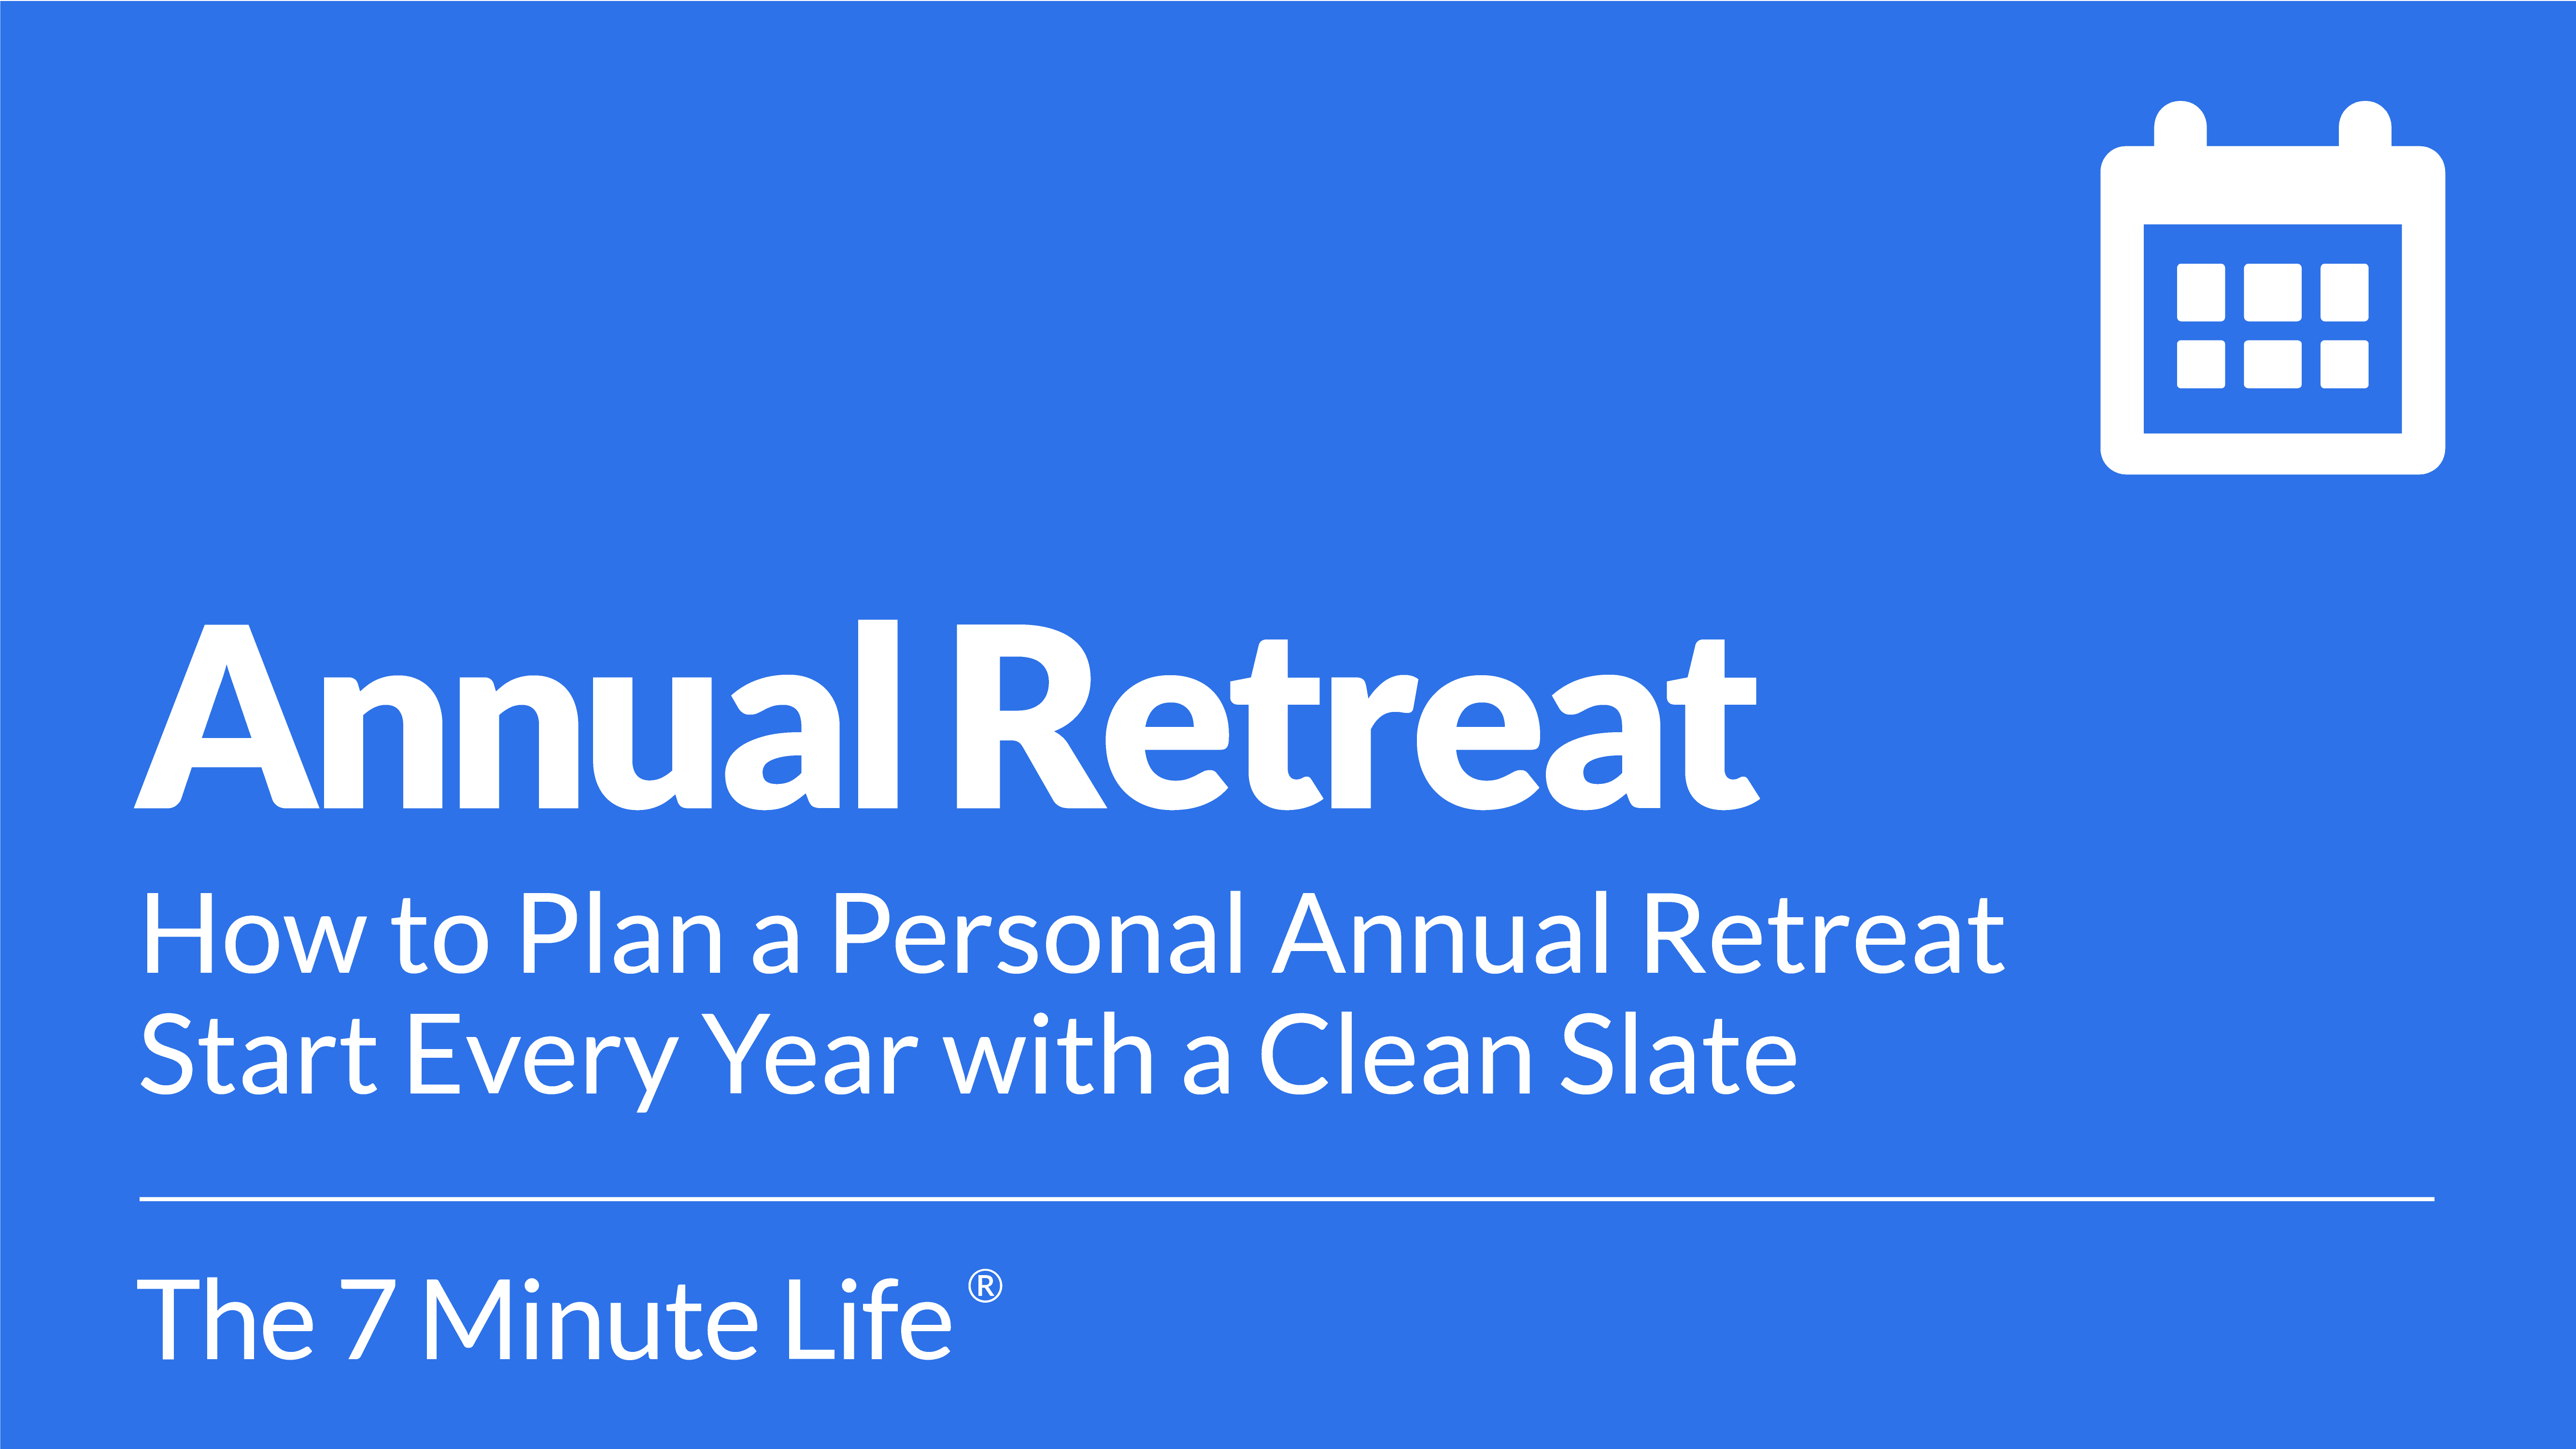 Annual Retreat